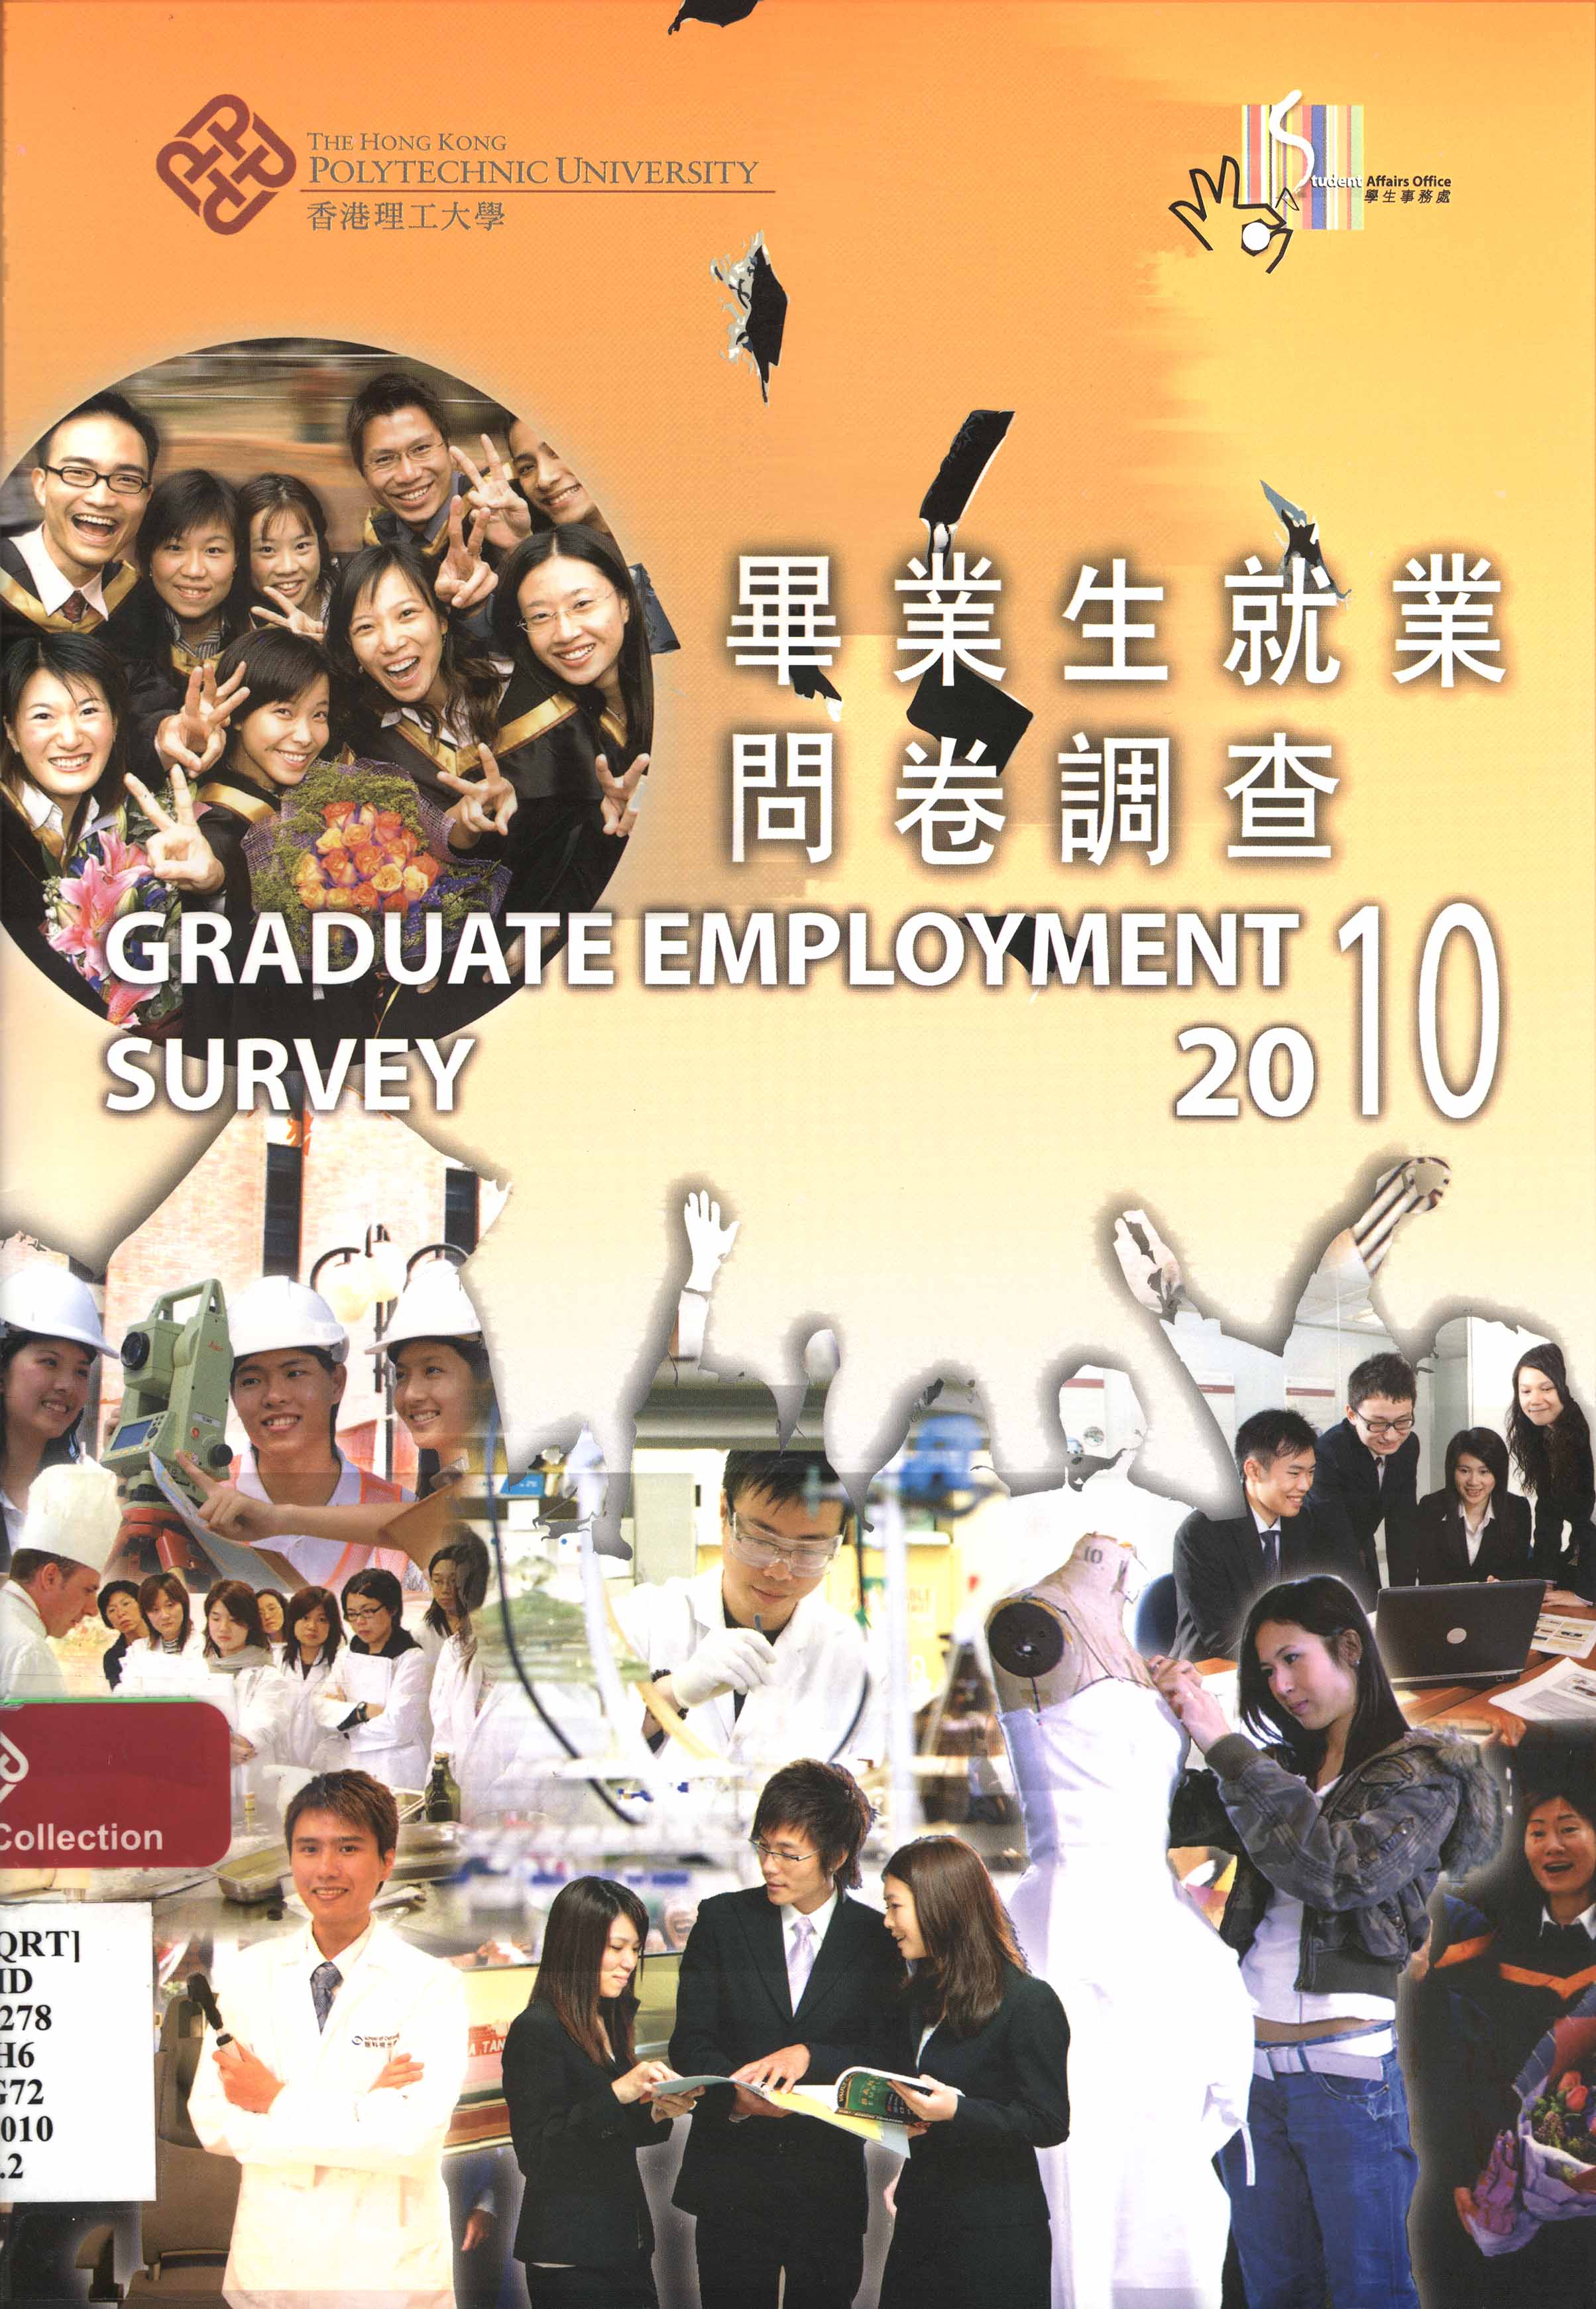 Graduate employment survey 2010